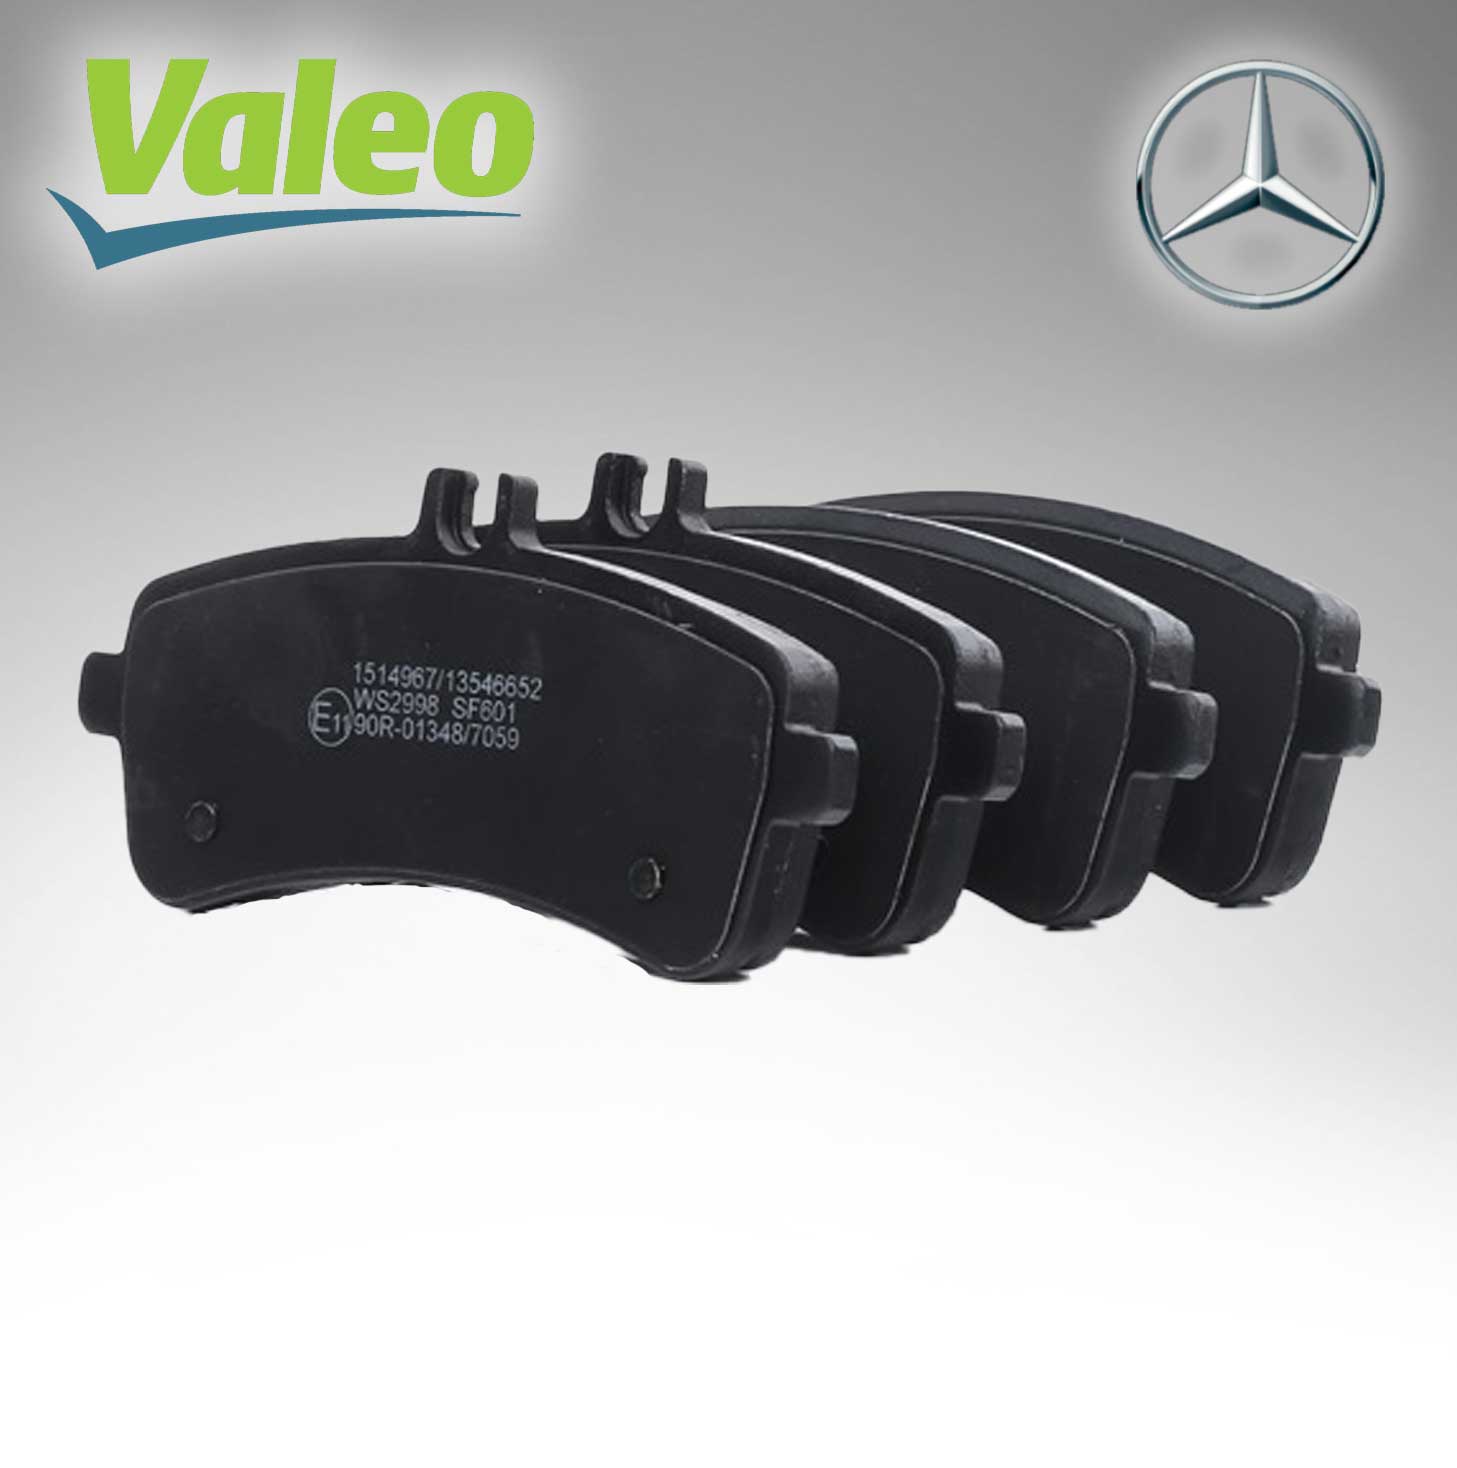 Valeo – HnD Automotive Parts